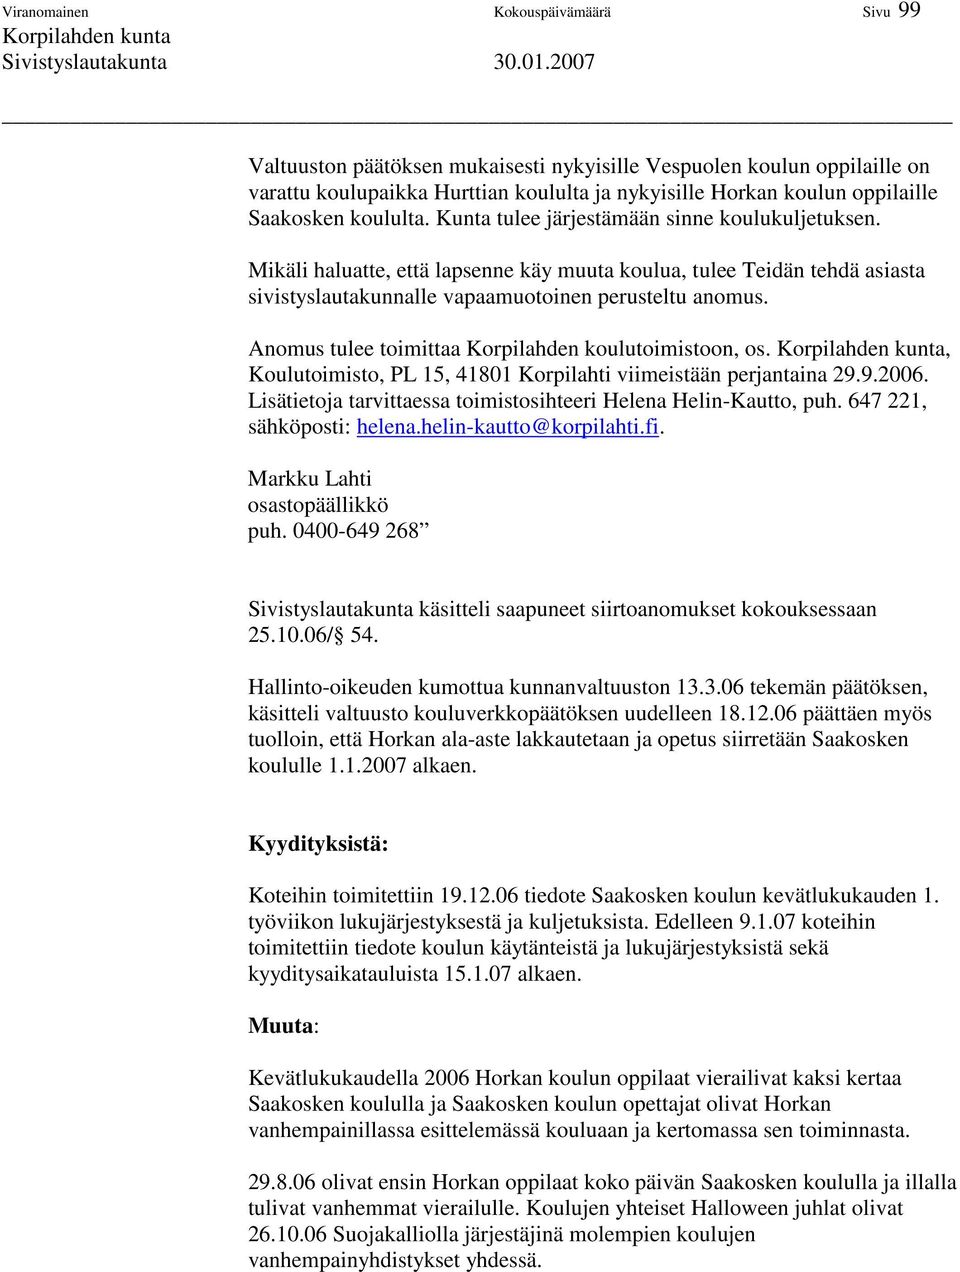 Anomus tulee toimittaa Korpilahden koulutoimistoon, os., Koulutoimisto, PL 15, 41801 Korpilahti viimeistään perjantaina 29.9.2006. Lisätietoja tarvittaessa toimistosihteeri Helena Helin-Kautto, puh.